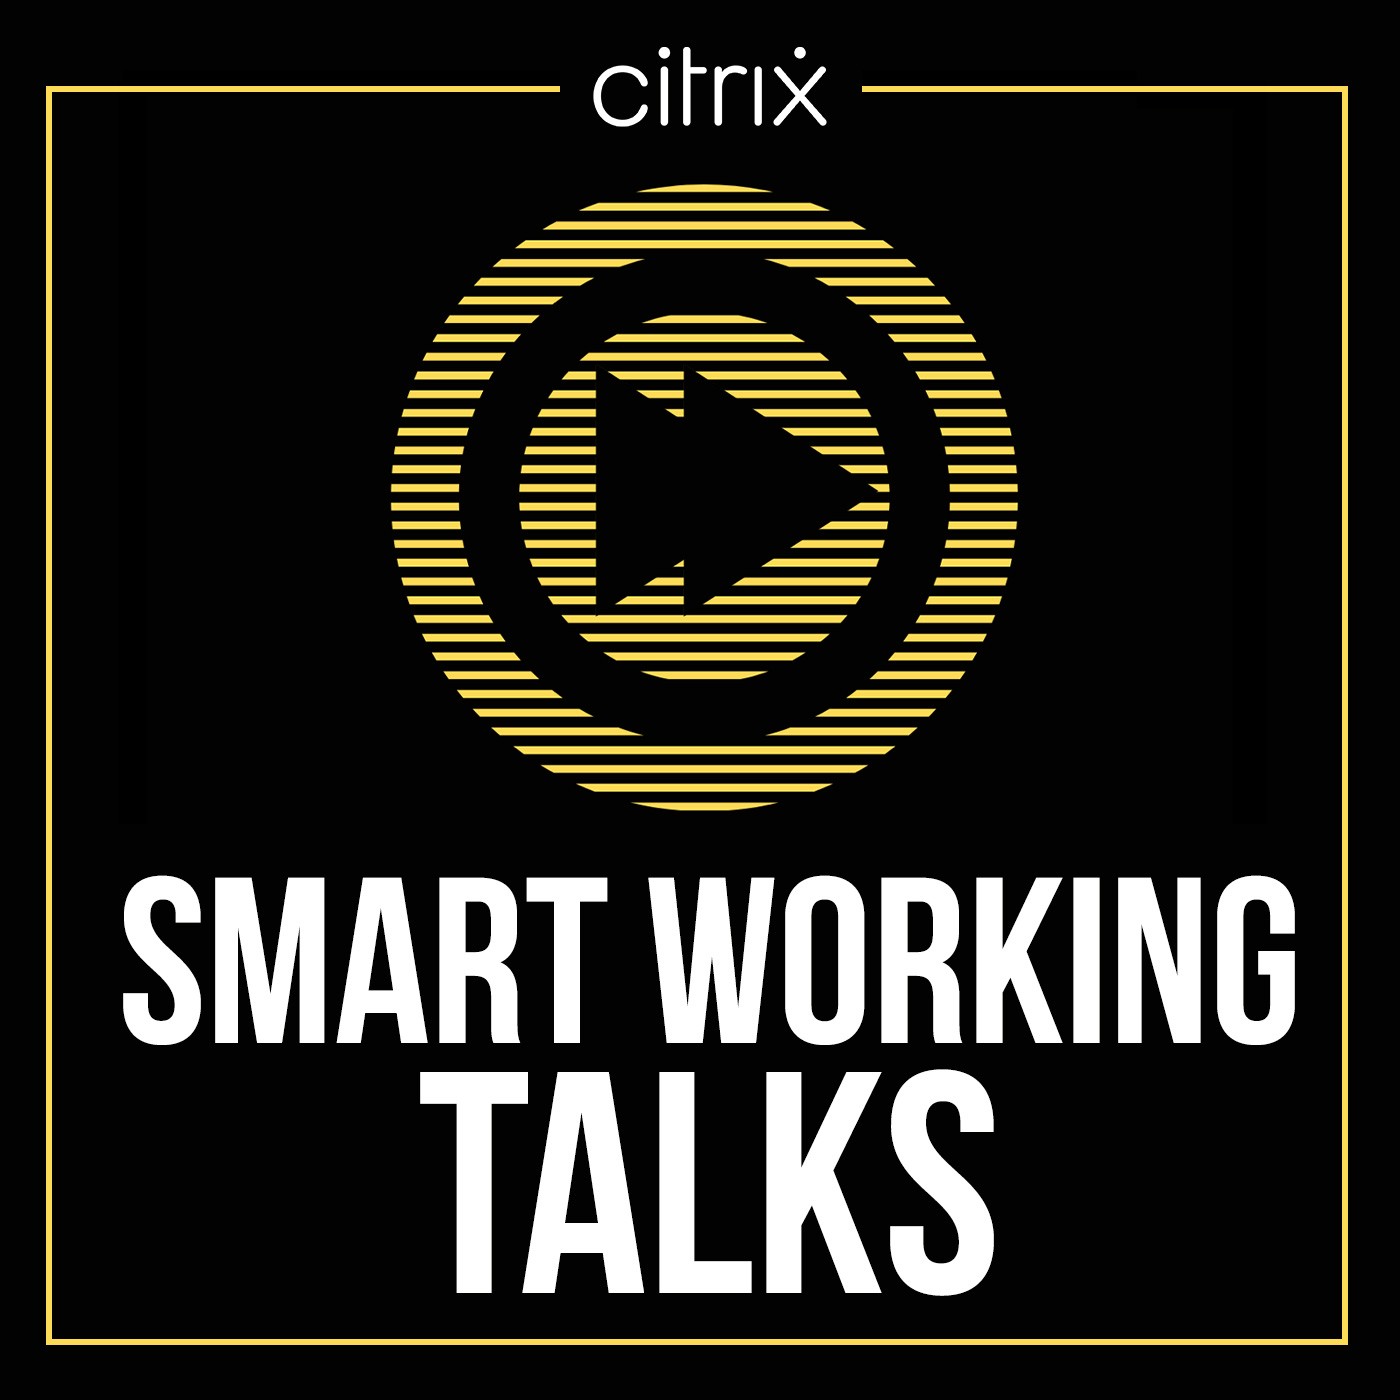 Smart Working Talks